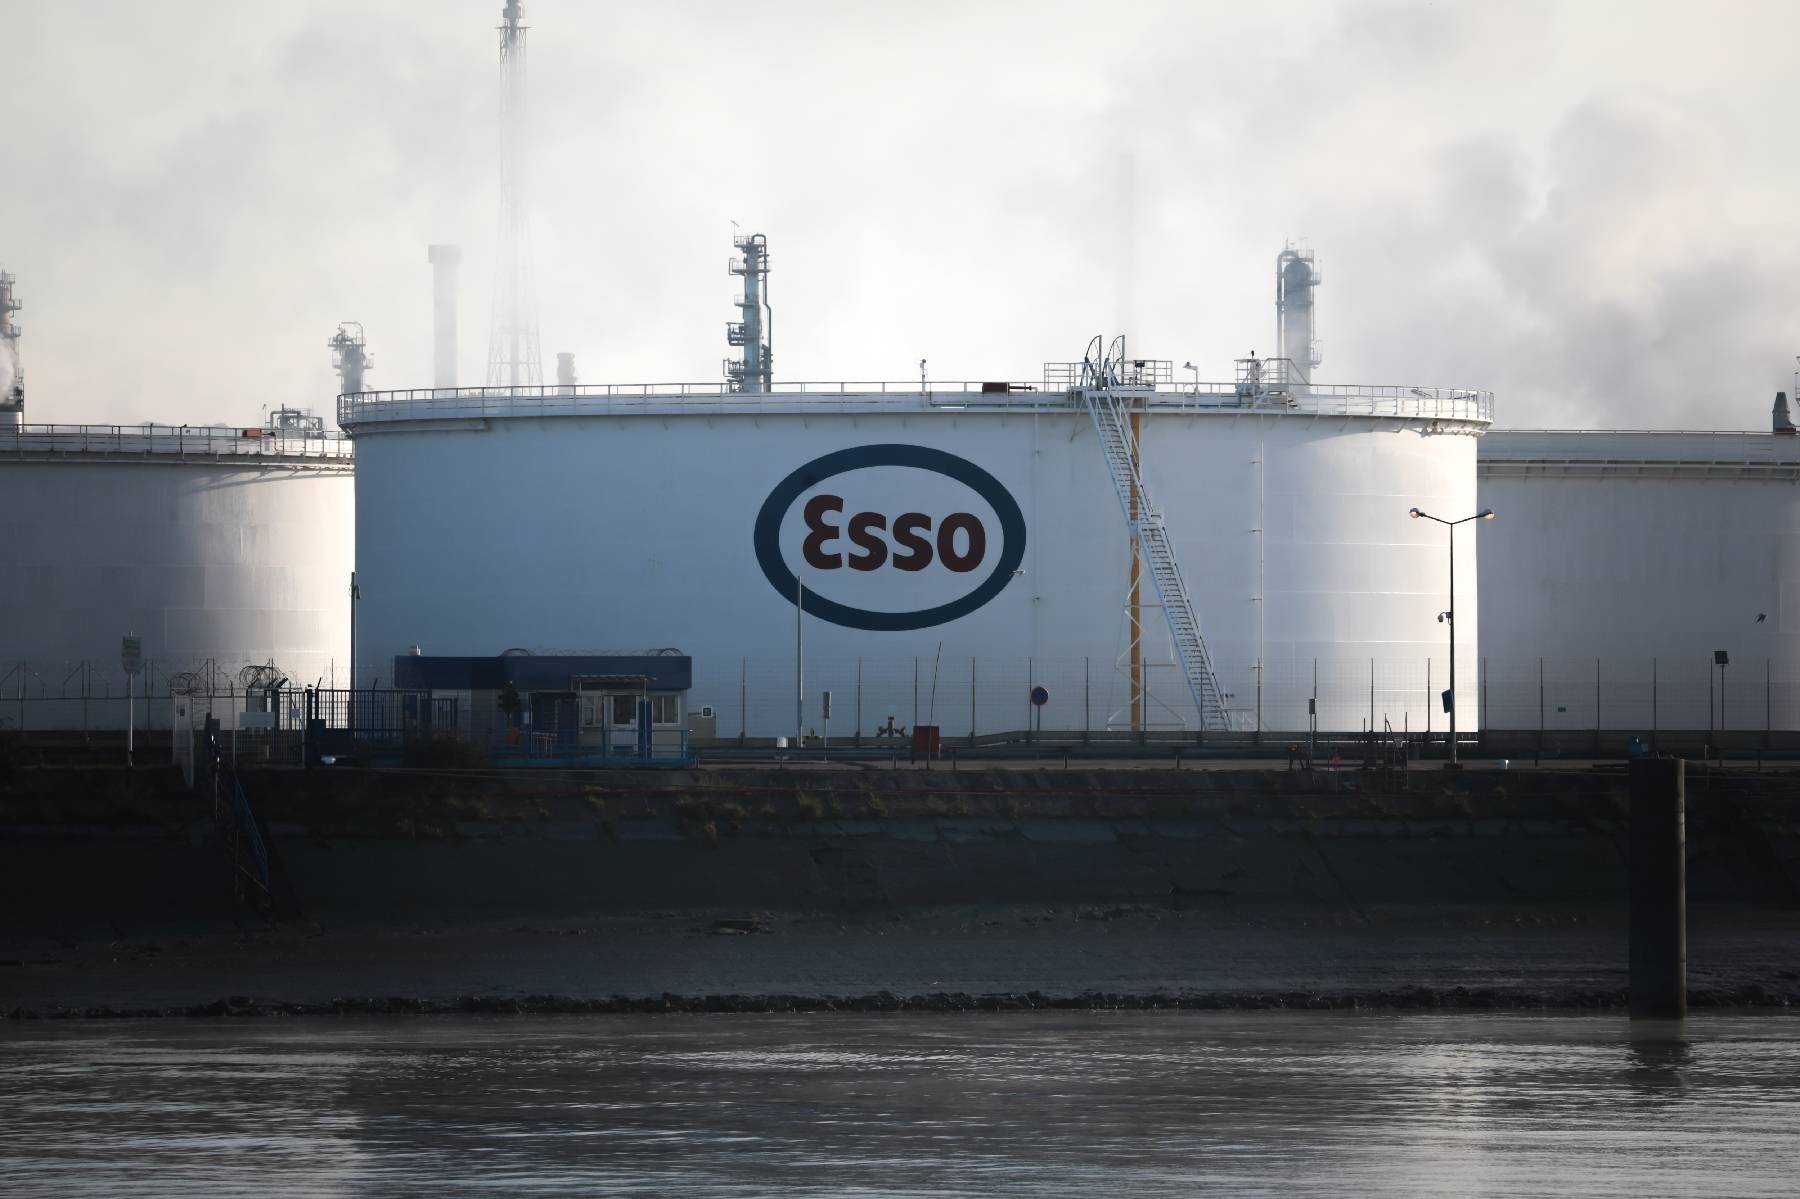 Réforme des retraites - Grèves : Esso-ExxonMobil annonce le redémarrage de sa raffinerie normande